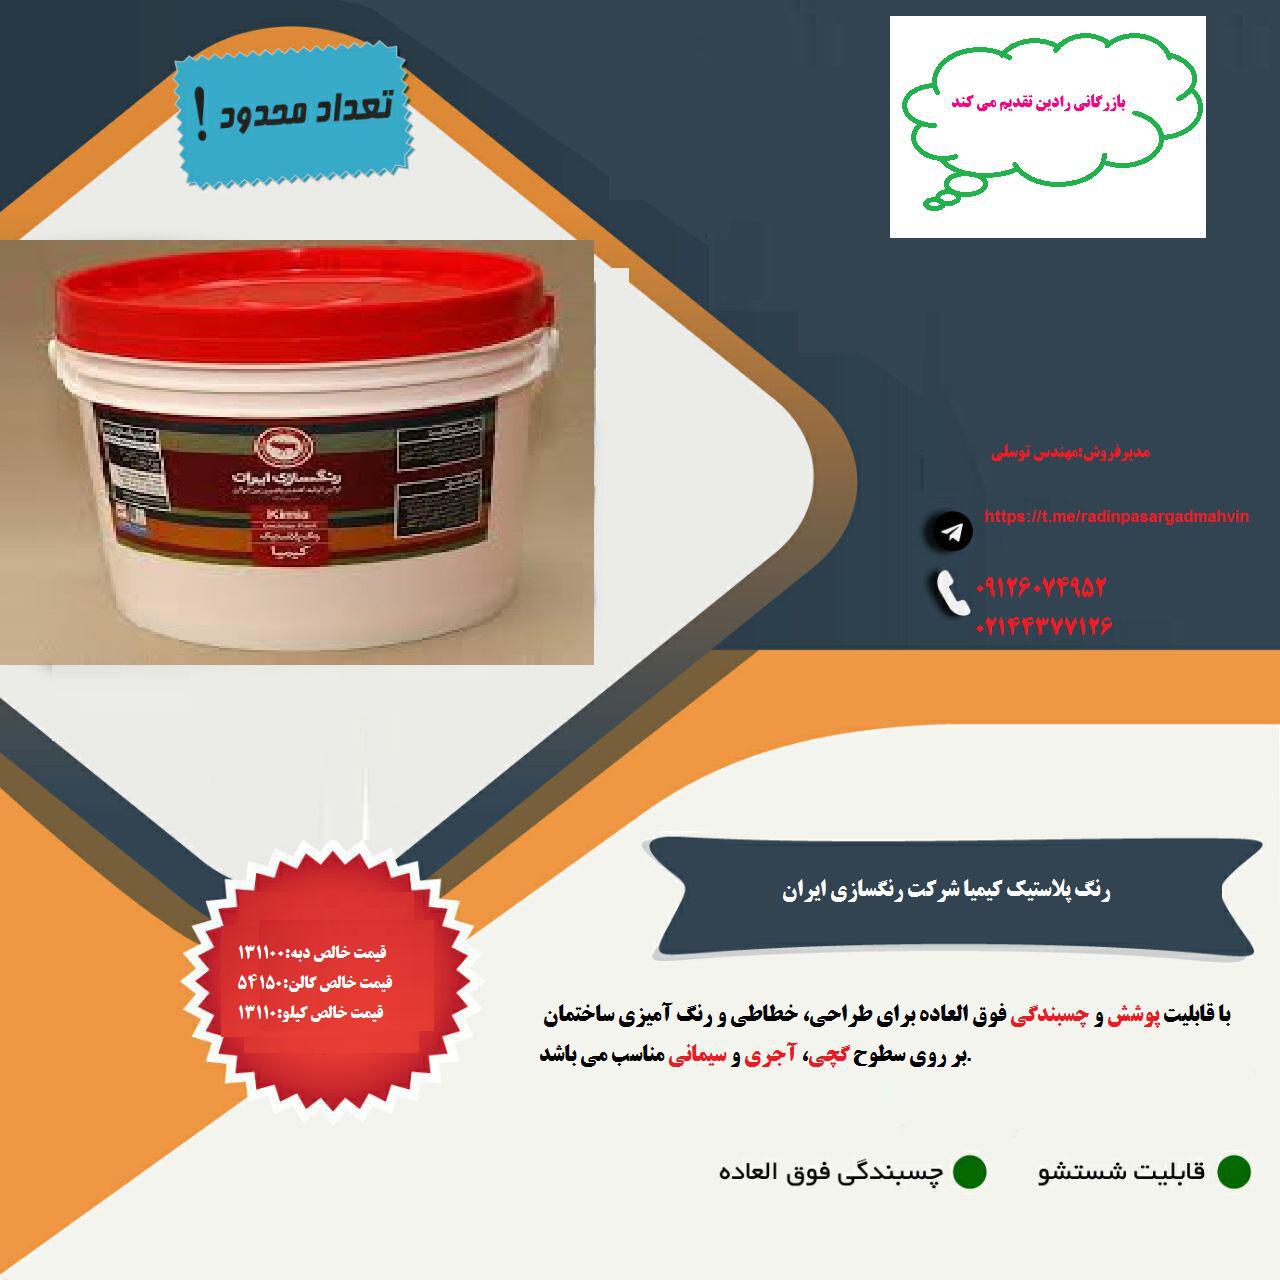 فروش ویژه رنگ تمام پلاستیک کیمیا شرکت رنگسازی ایران